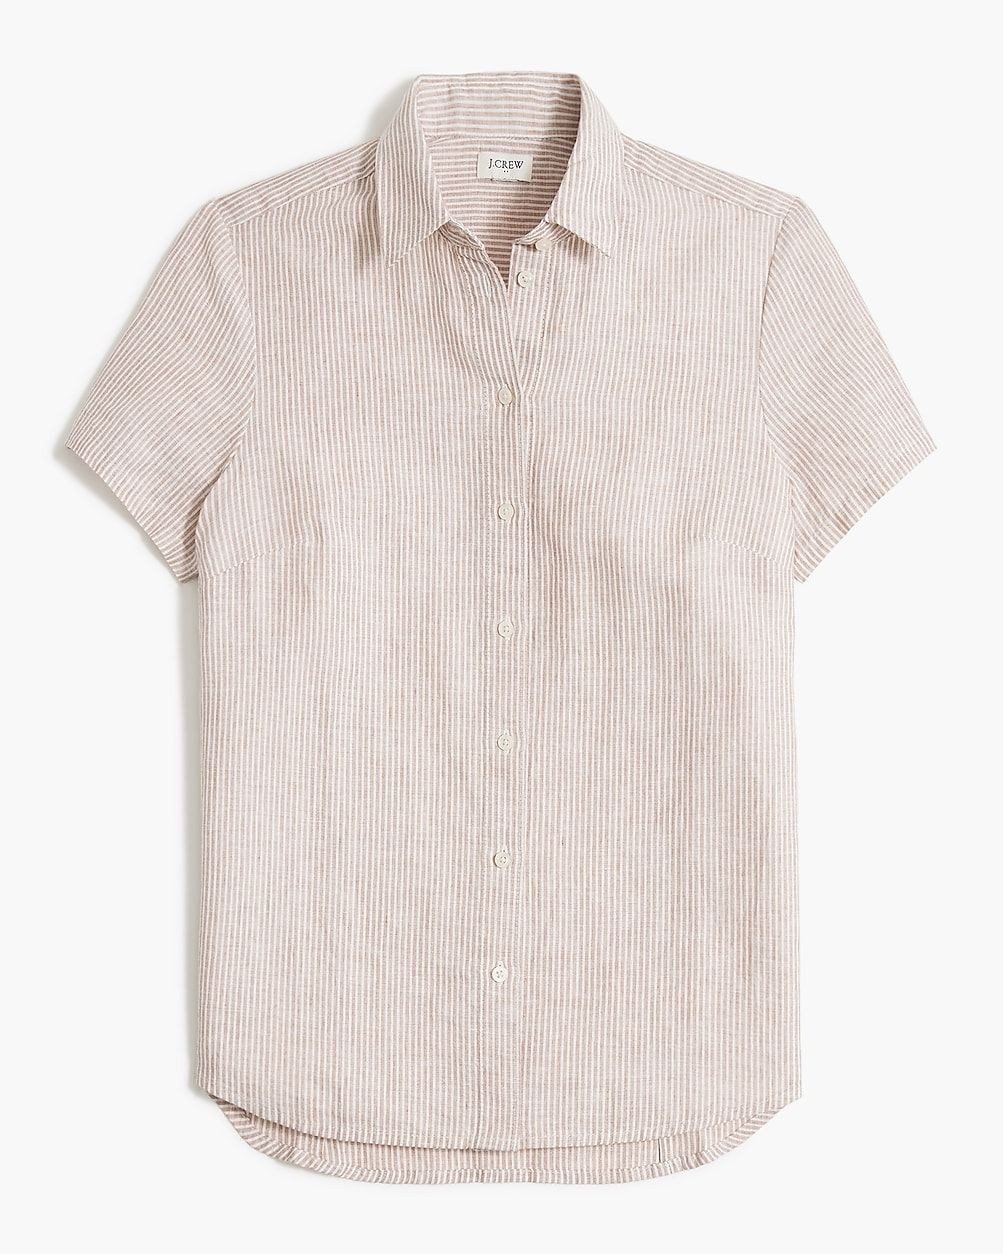 Striped short-sleeve linen-blend button-up shirt | J.Crew Factory